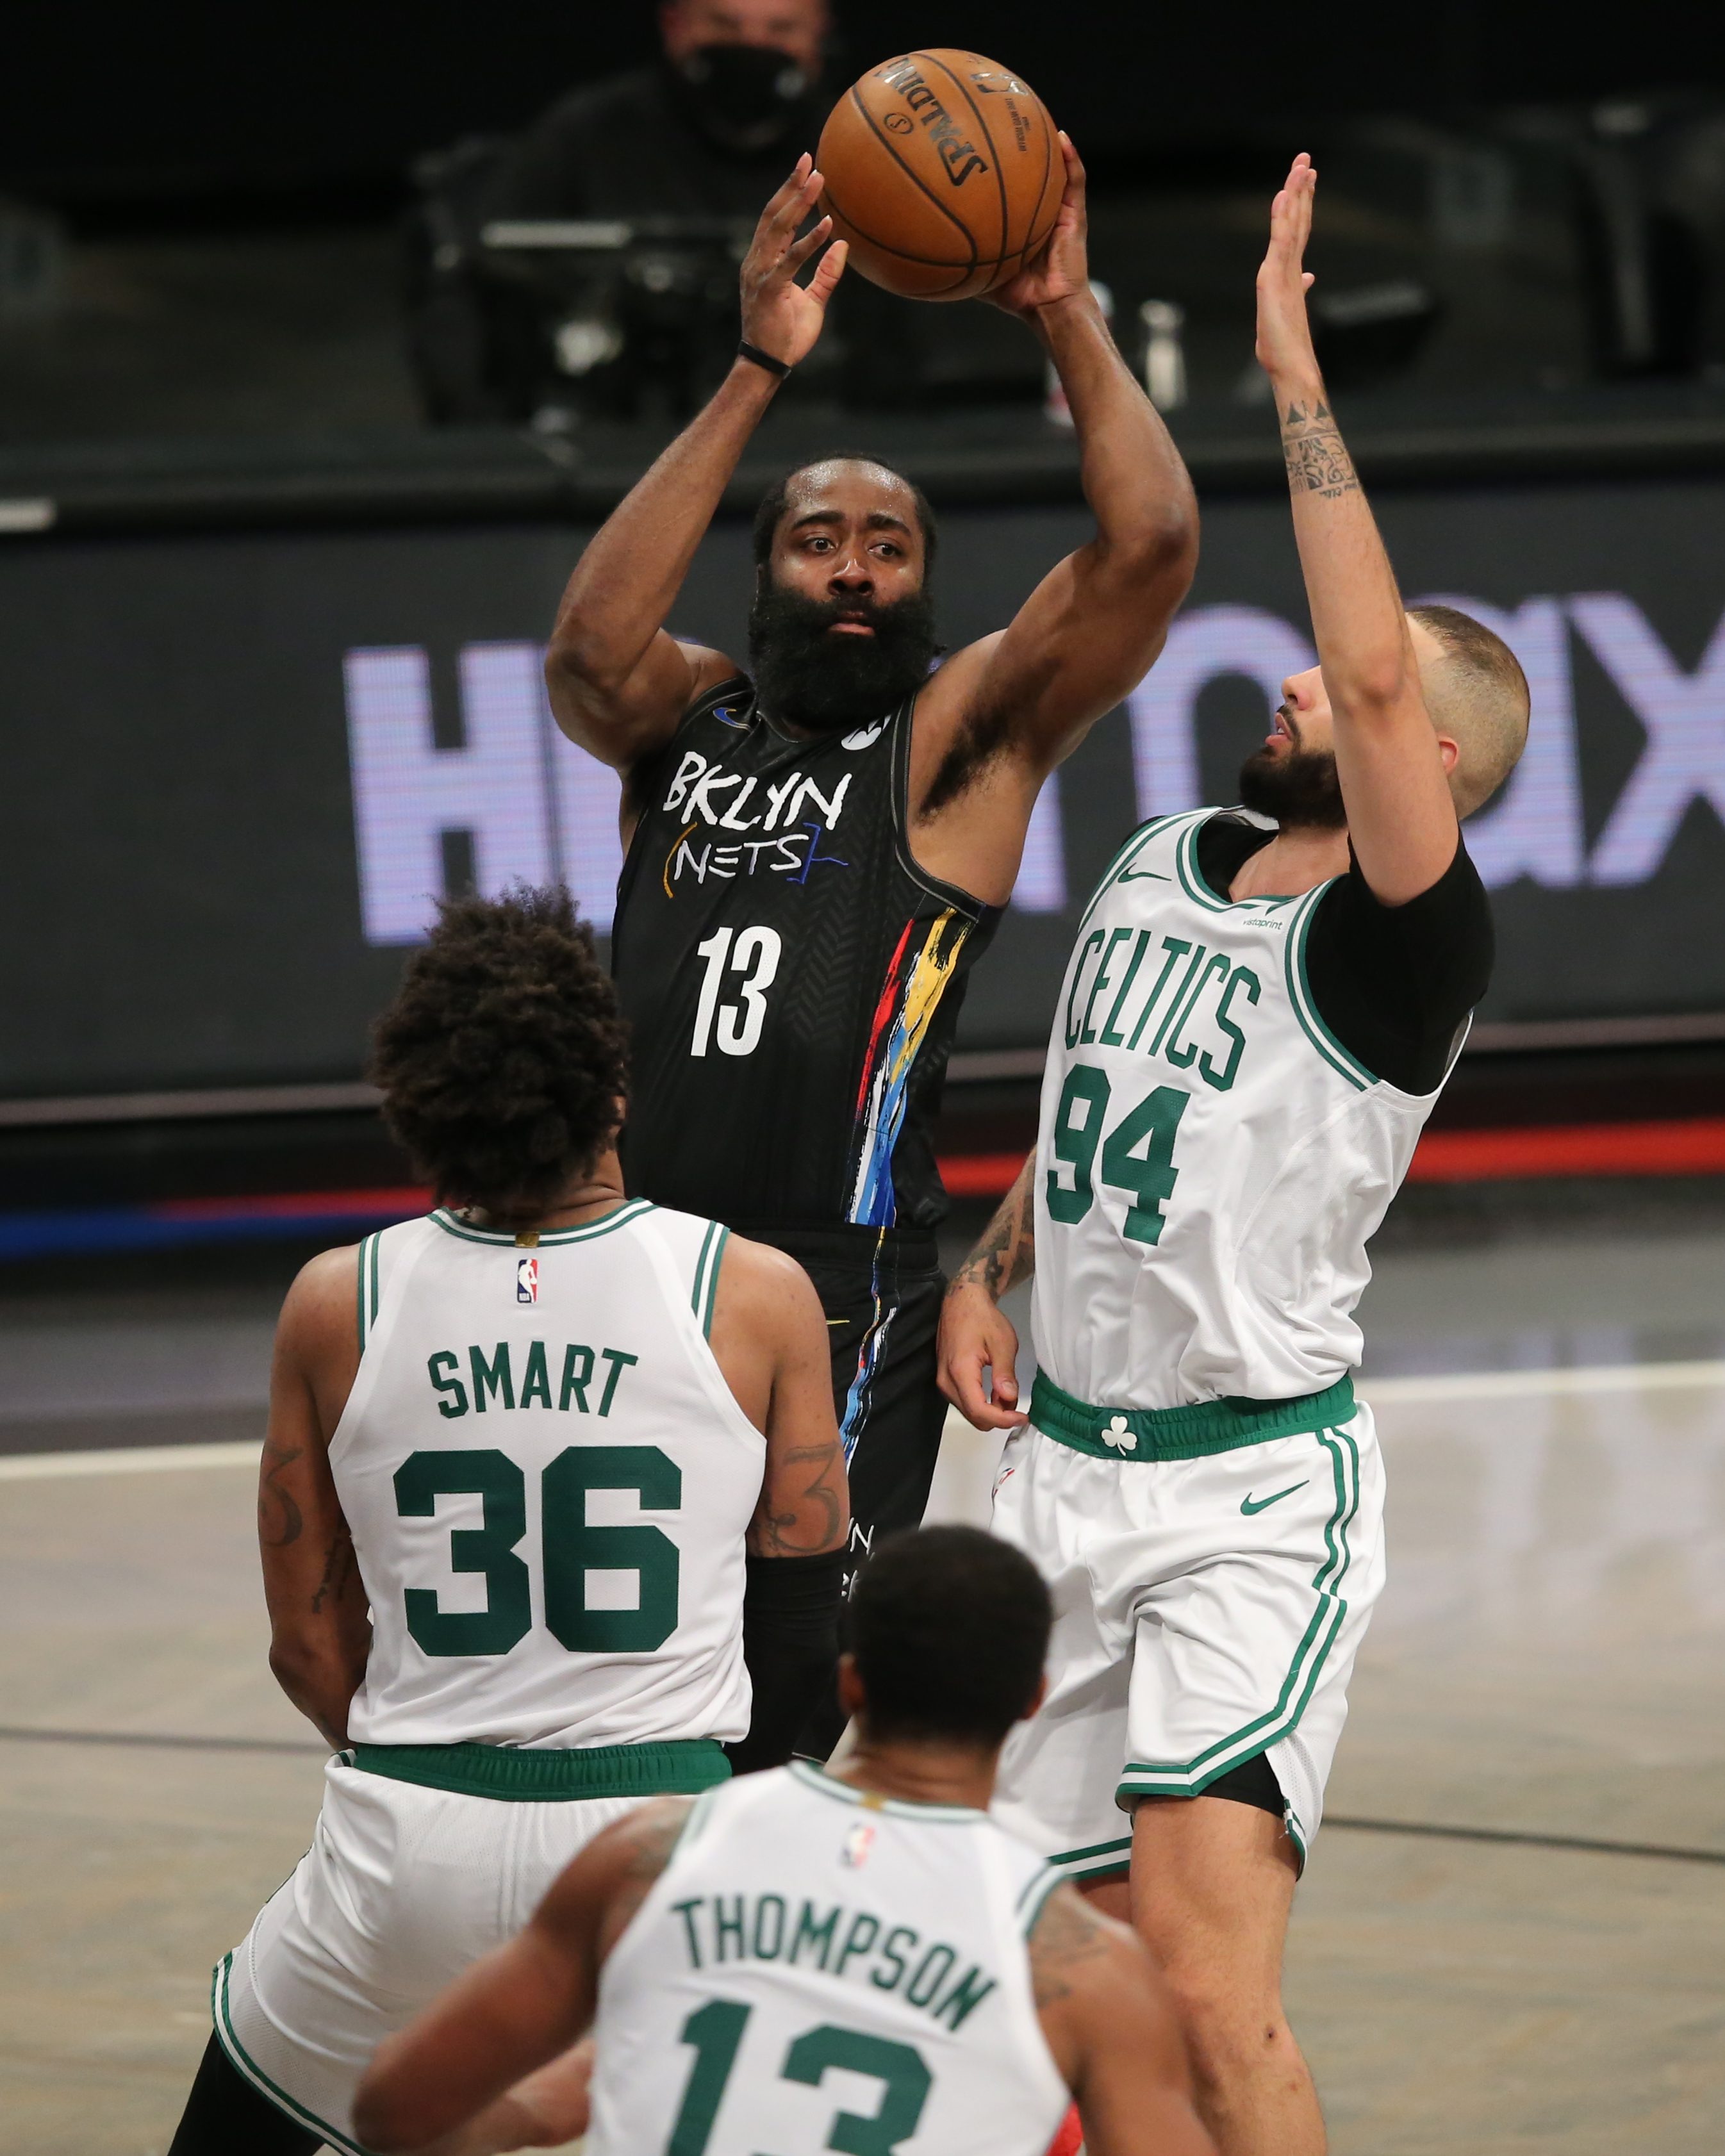 James Harden drops triple-double as Nets close out Celtics series